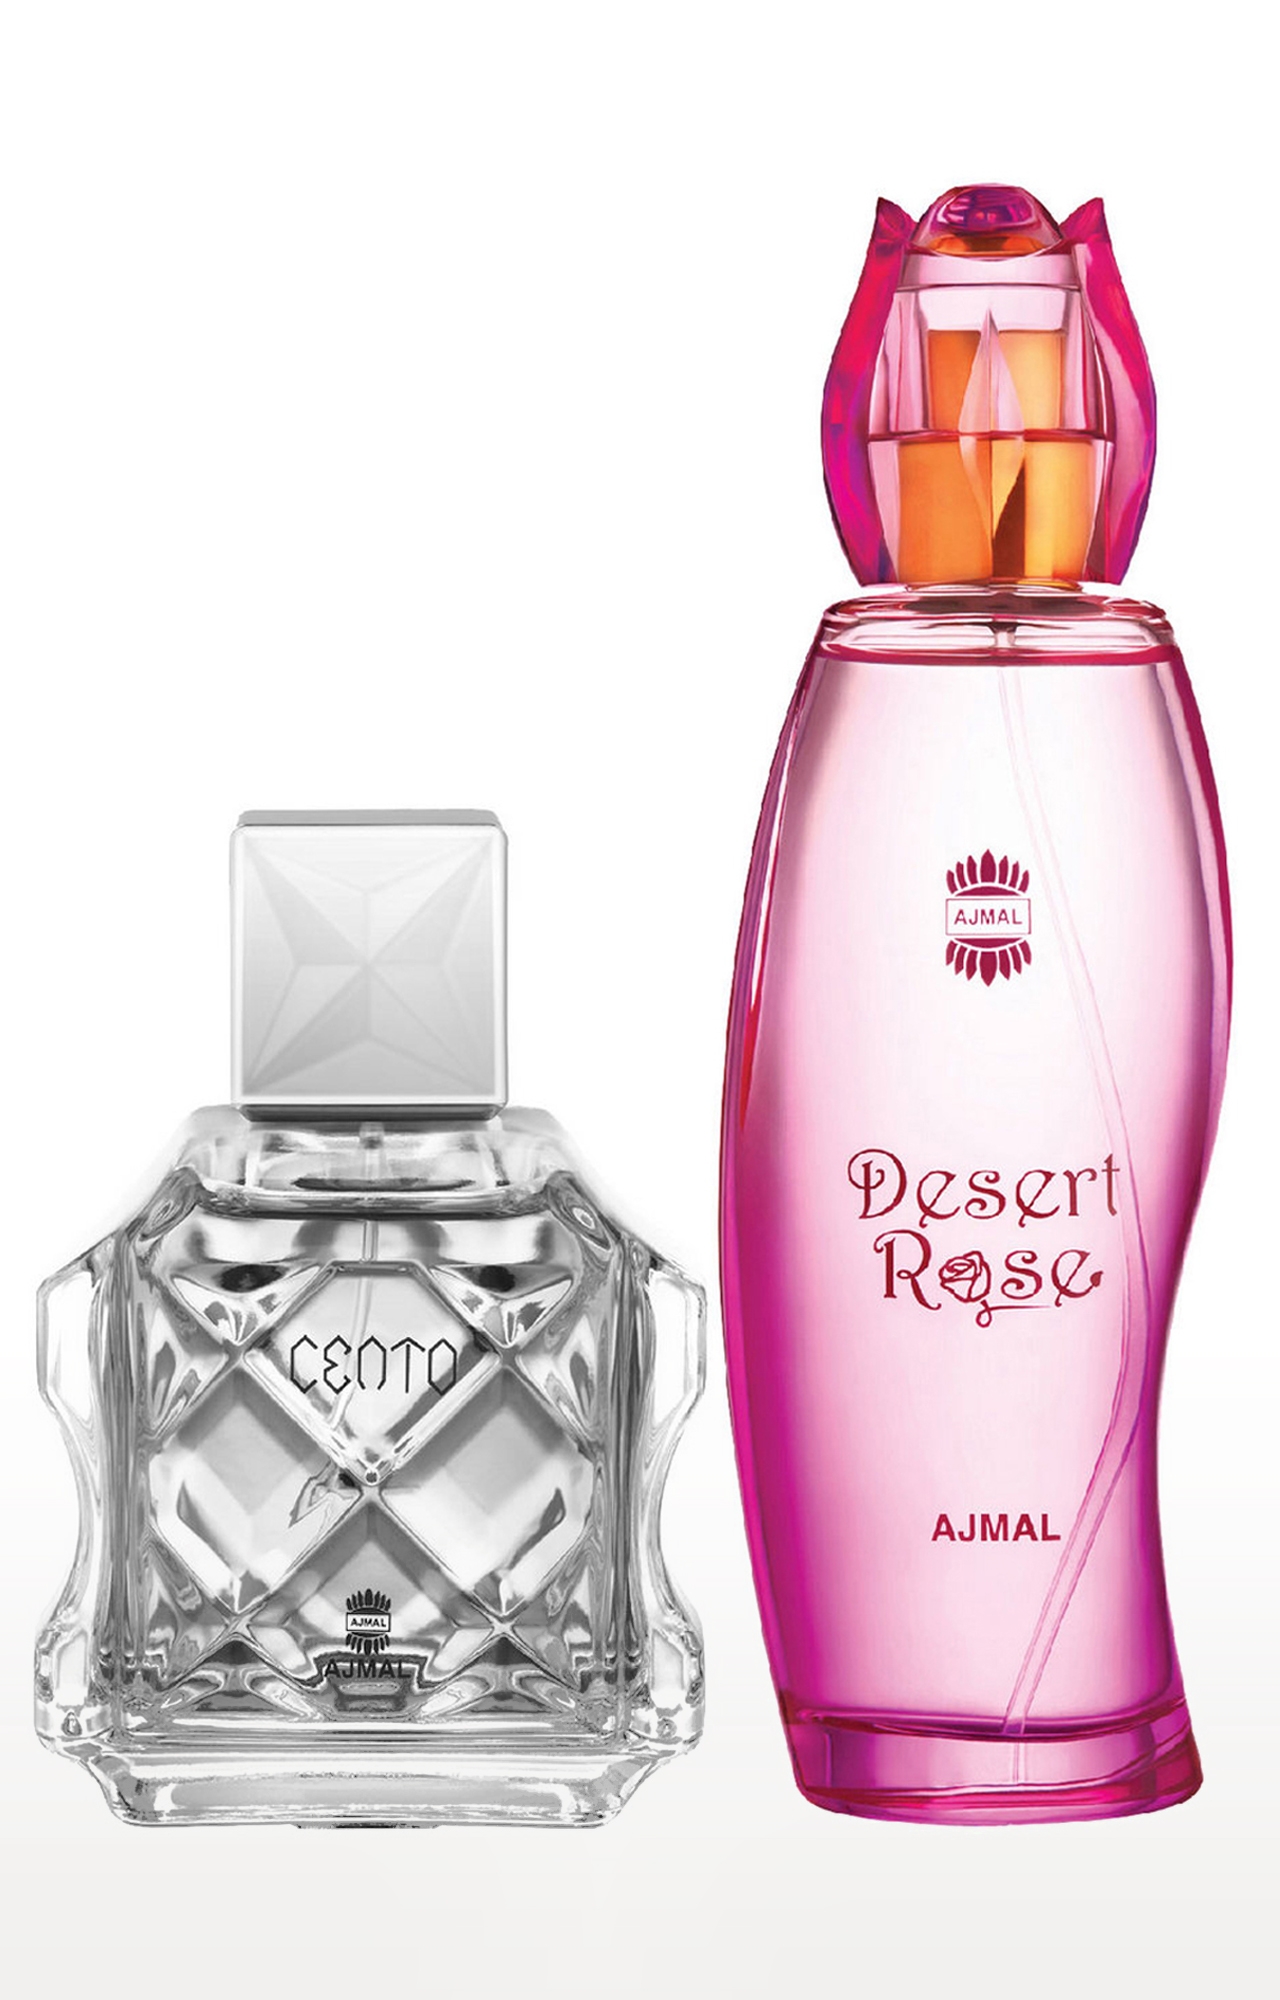 Ajmal Cento EDP Perfume 100ml for Men and Desert Rose EDP Oriental Perfume 100ml for Women